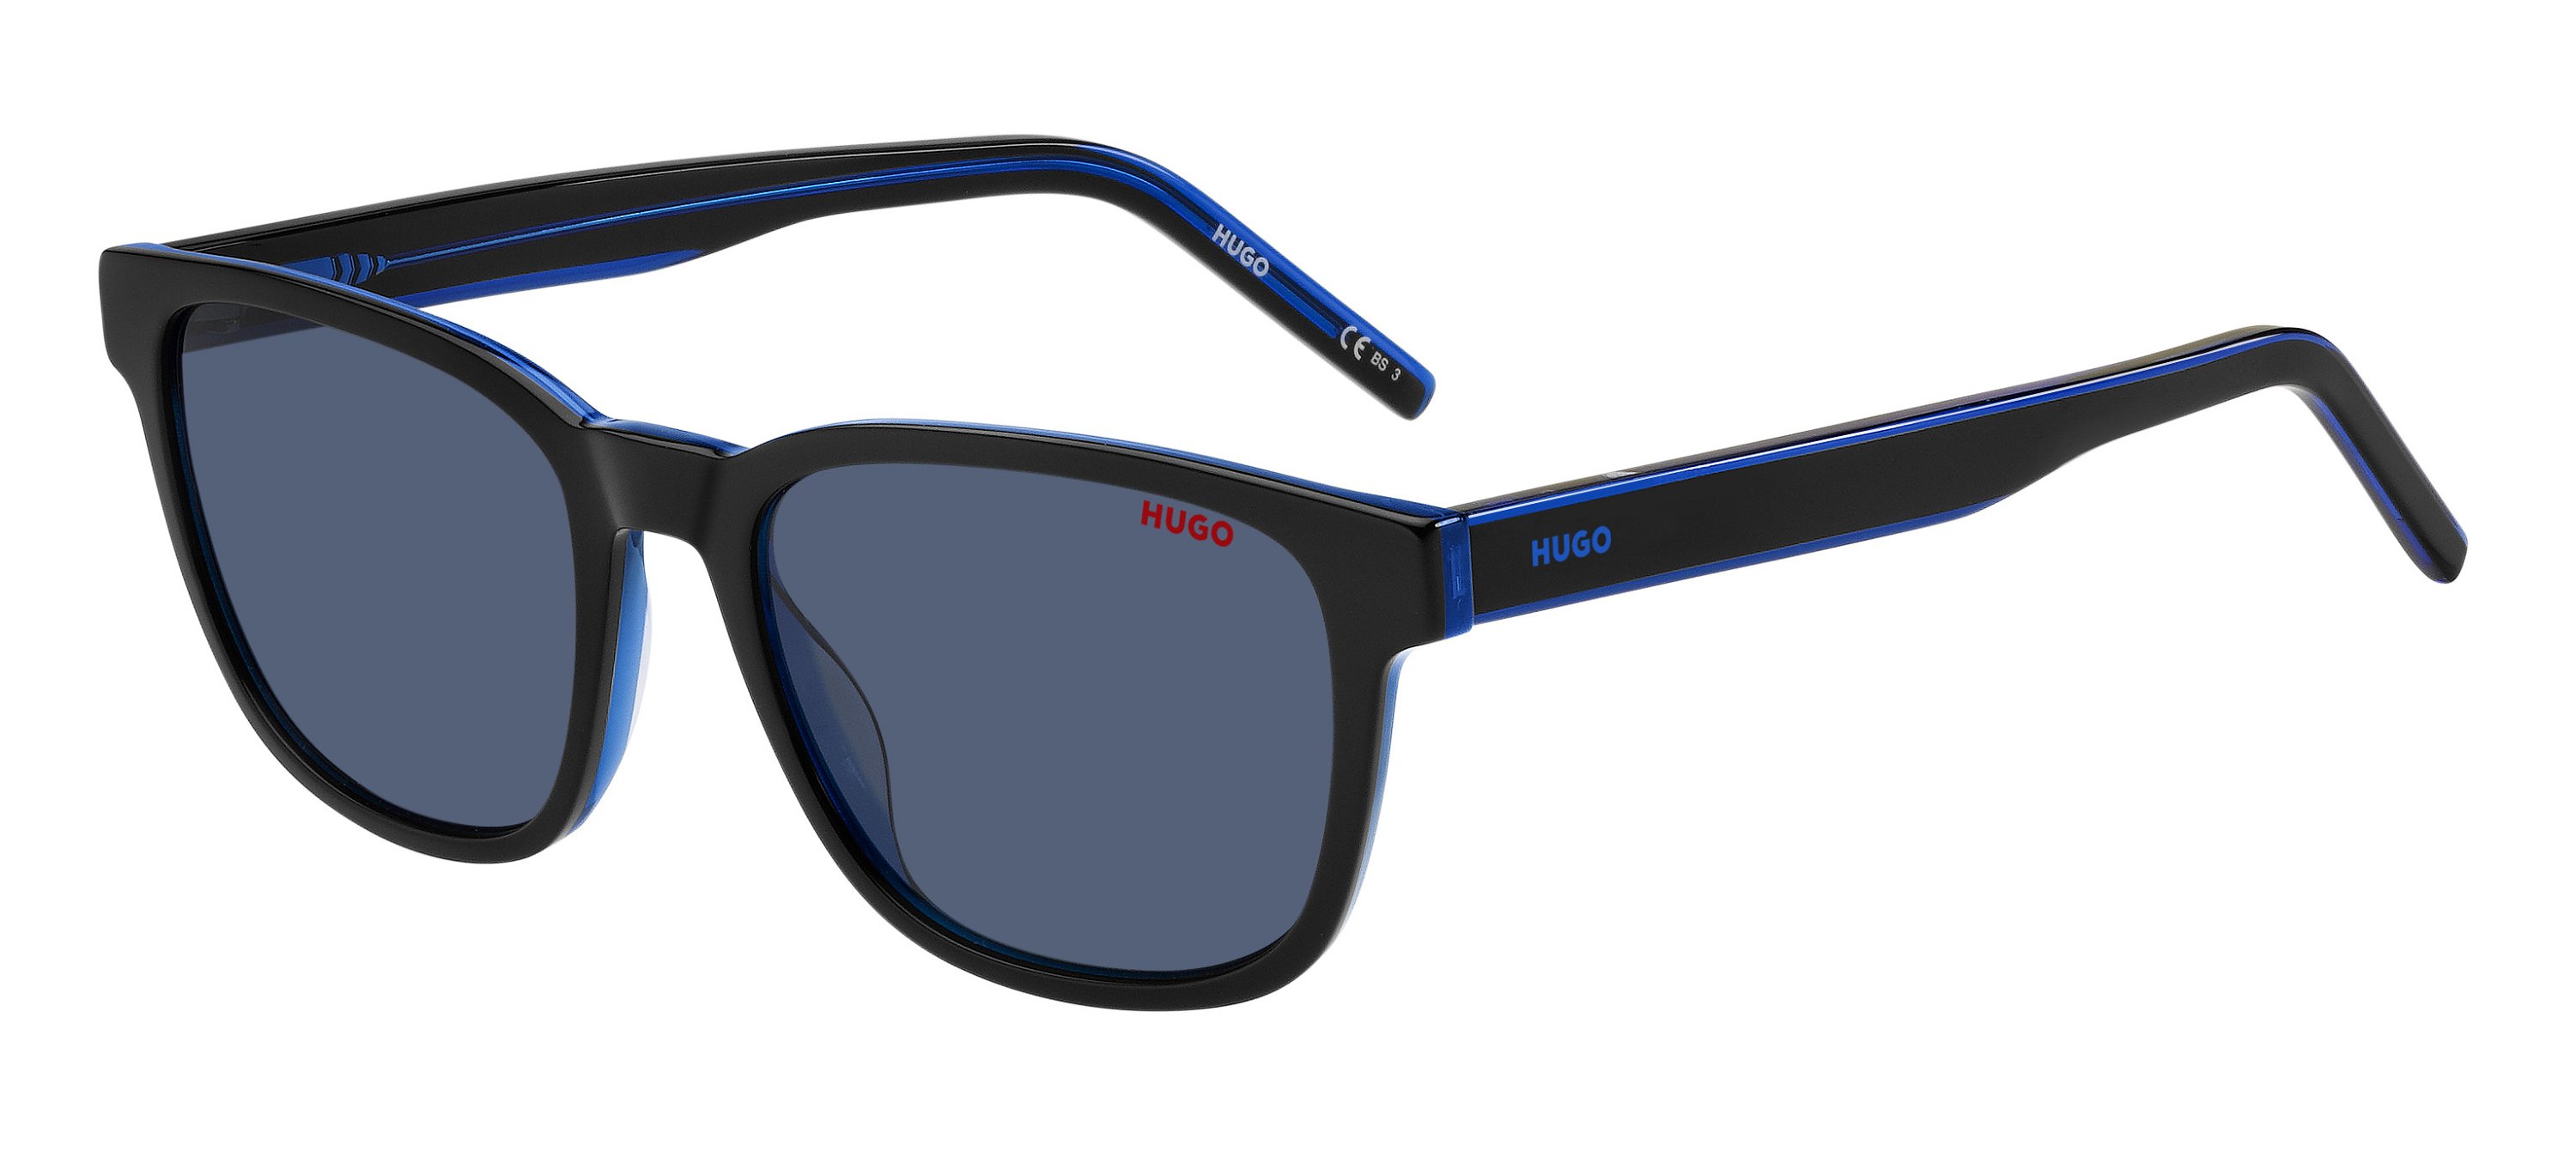 Das Bild zeigt die Sonnenbrille HG1243/S D51 von der Marke Hugo in schwarz/blau.